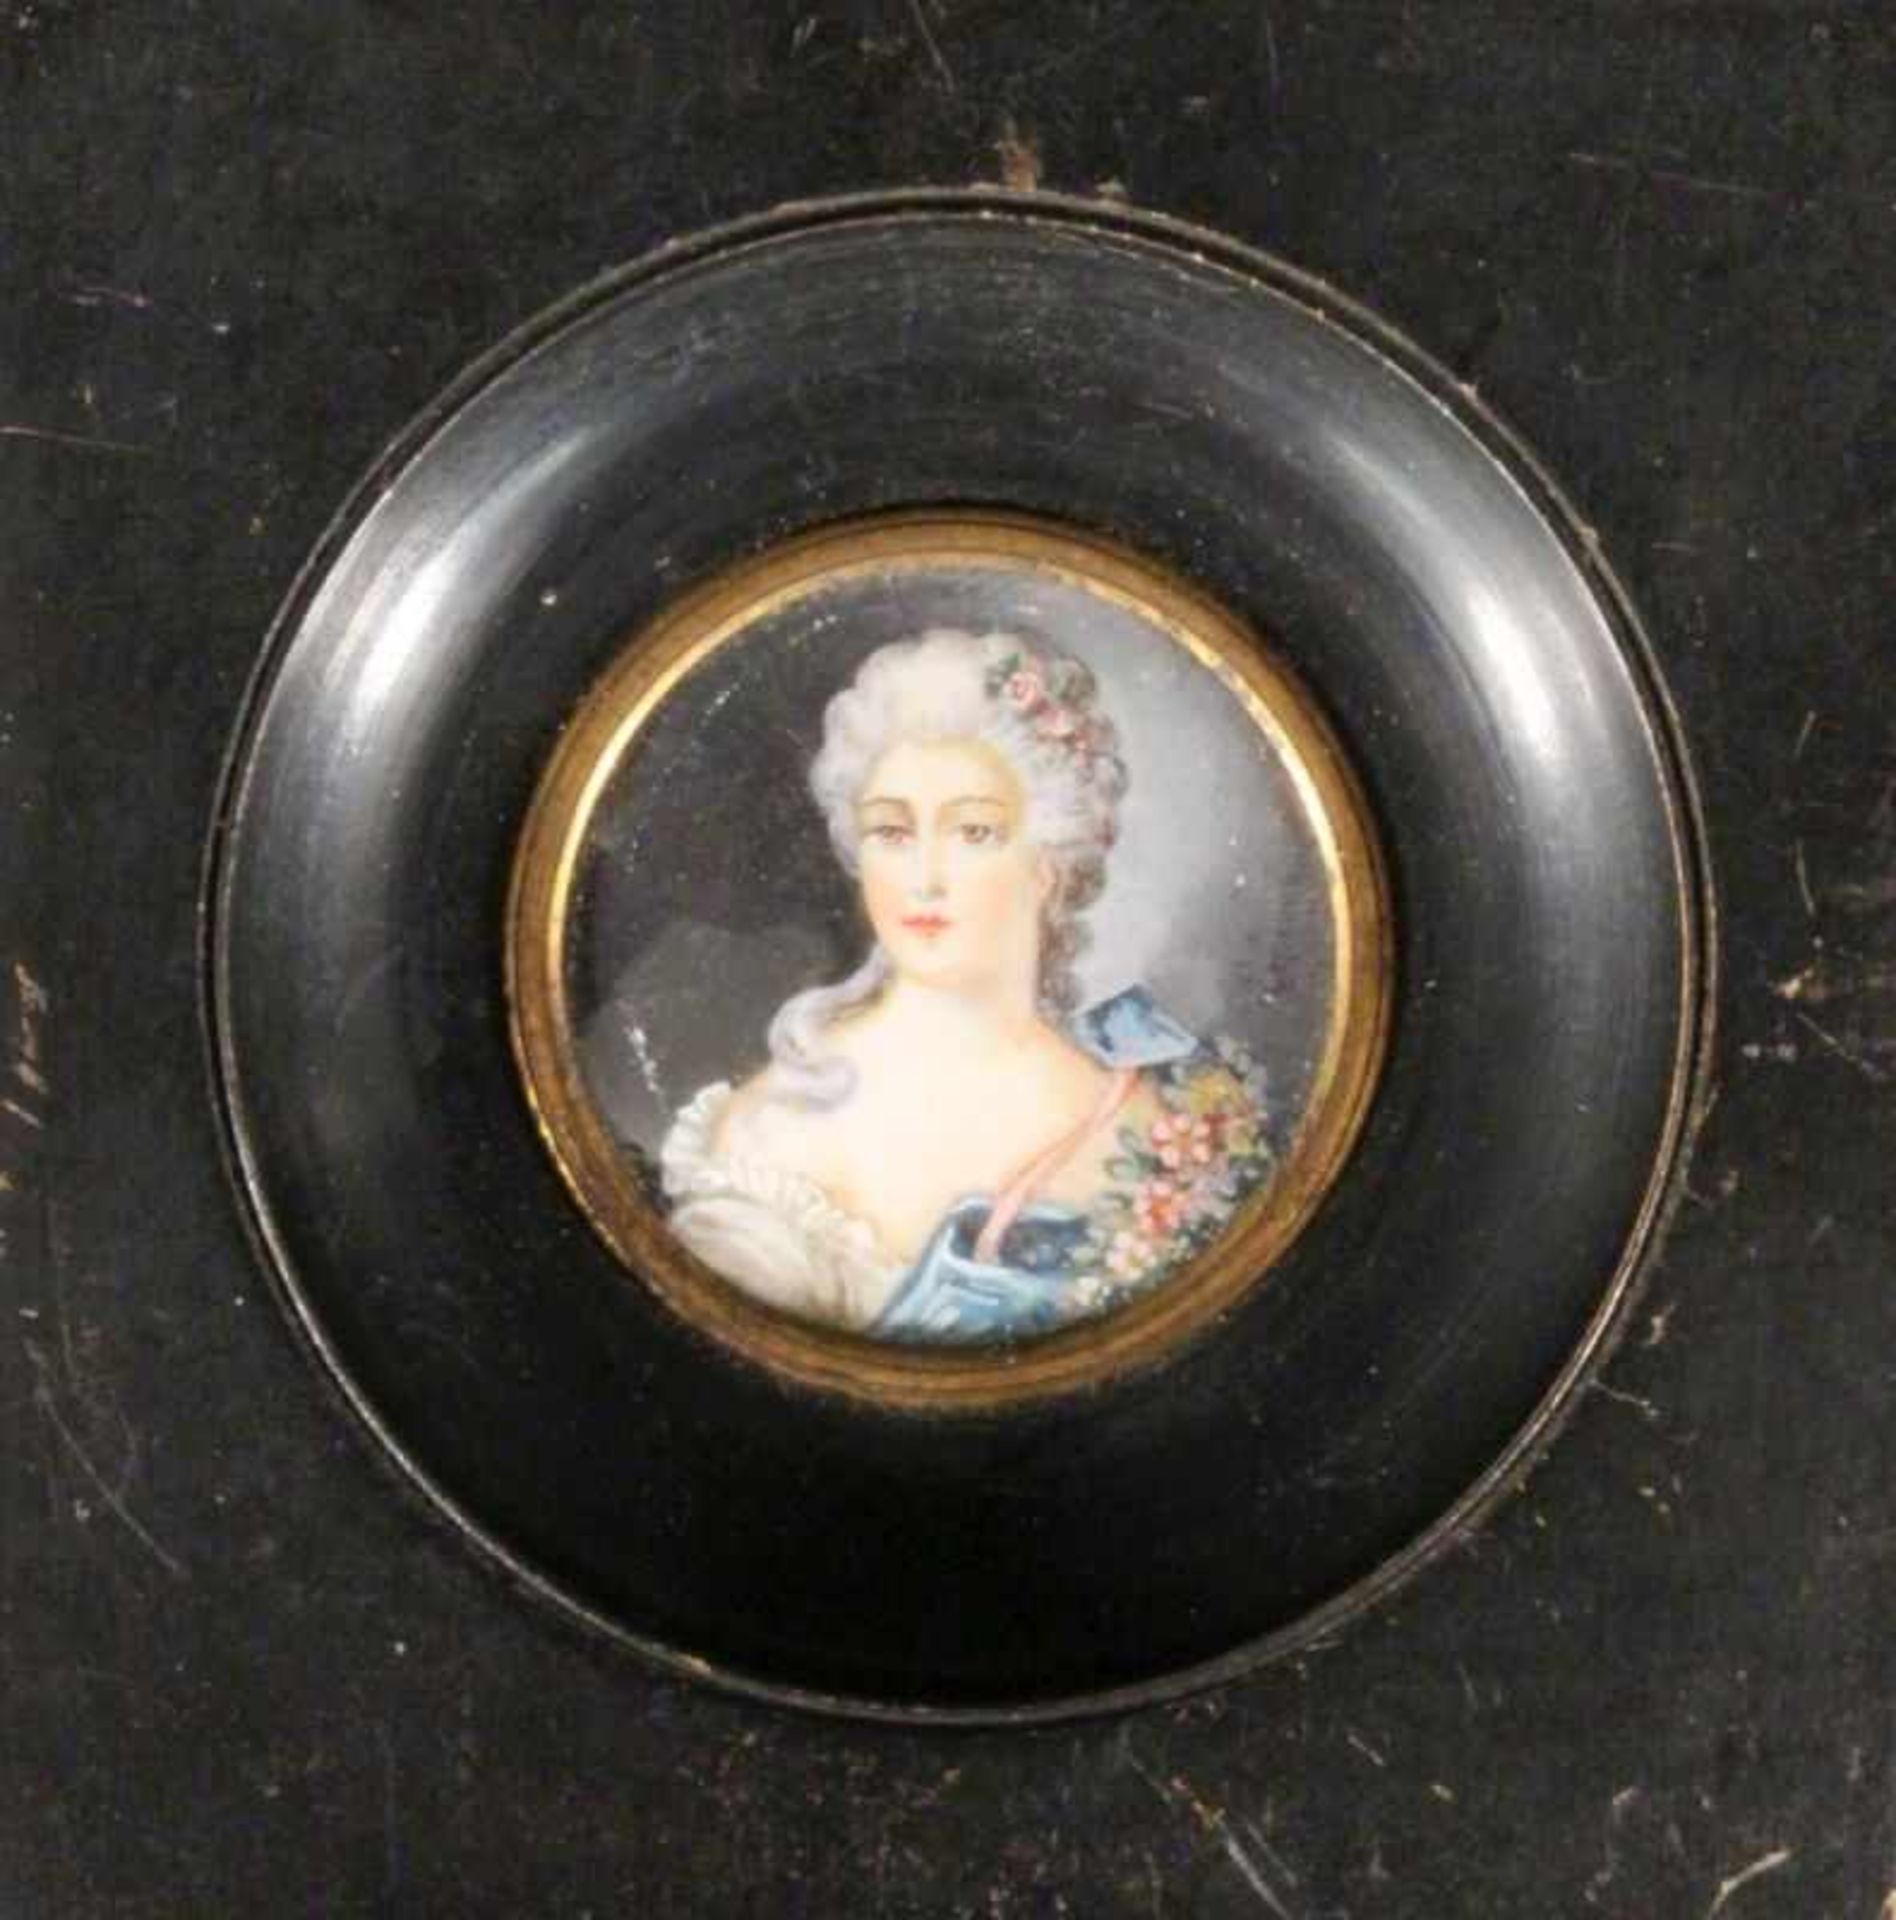 MINIATUR Bildnis einer Dame des Barock. Farbig auf Elfenbein gemalt. Bez.: Lepine. Rund, D.4,5cm A